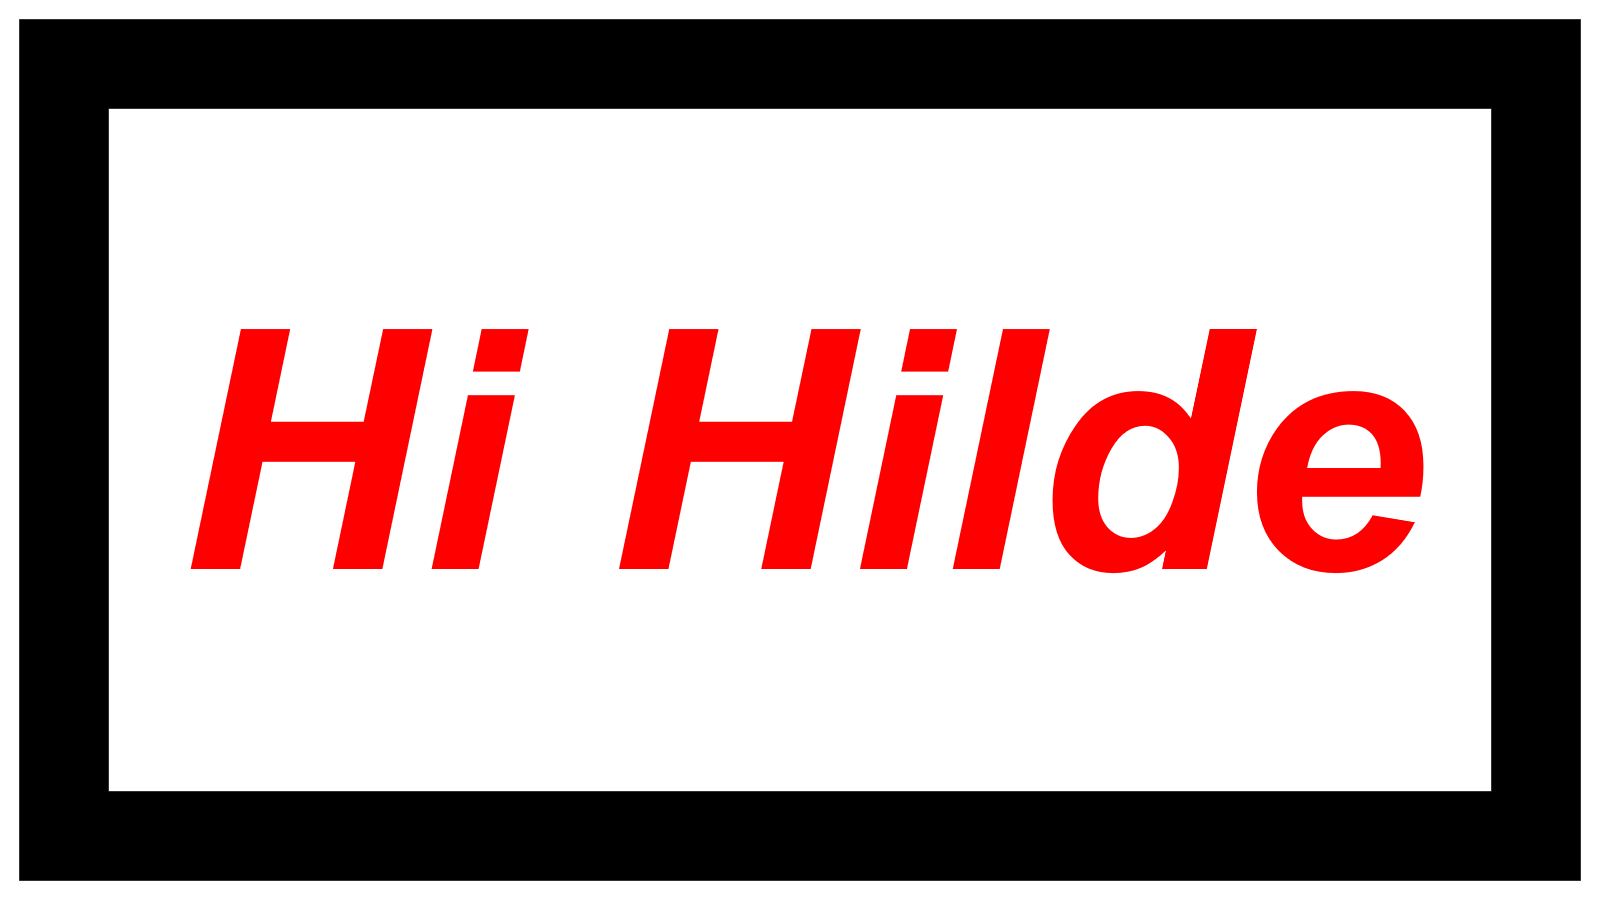 Hi Hilde